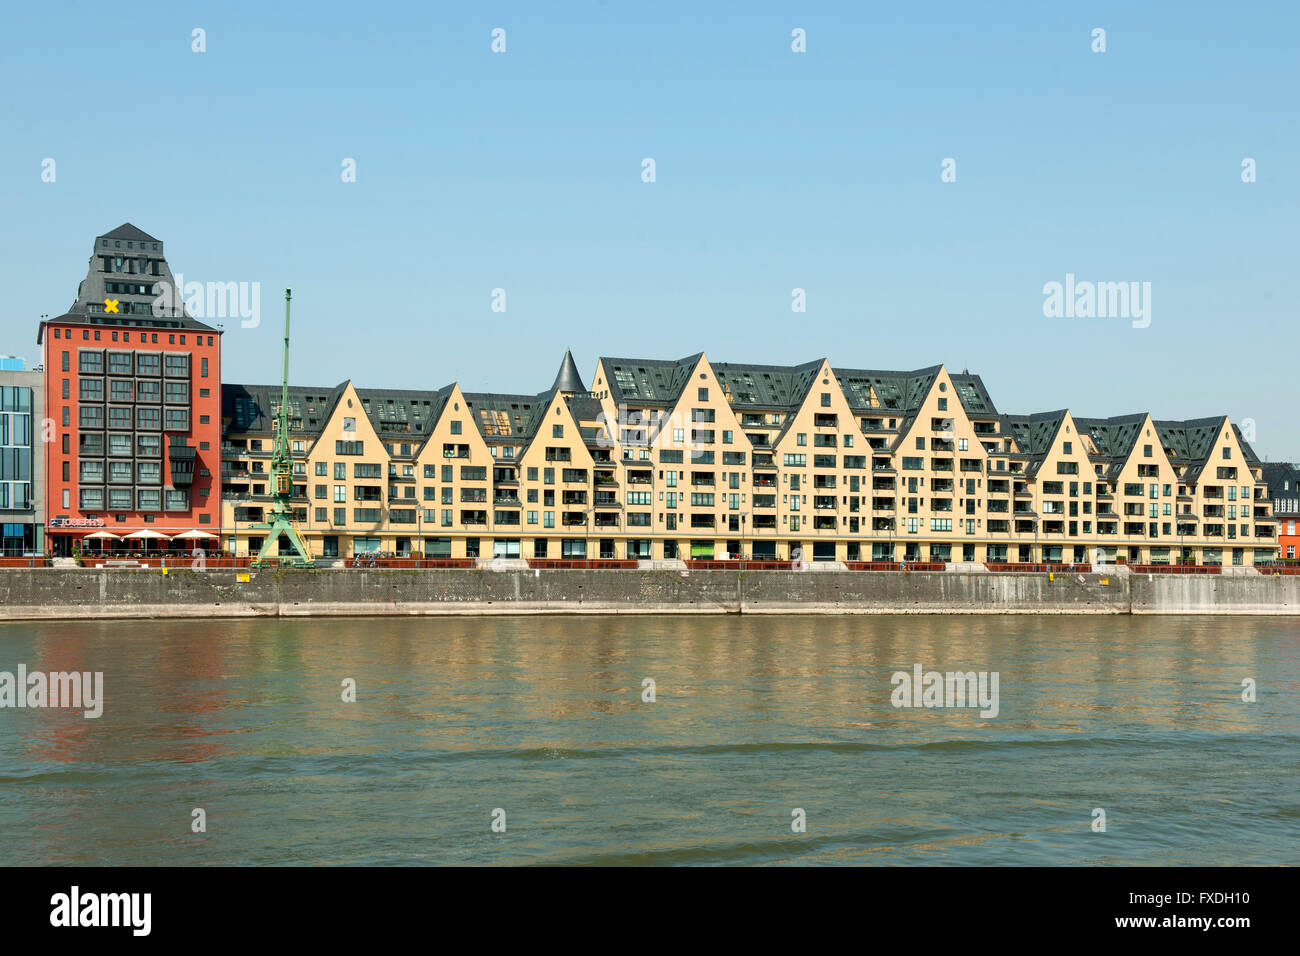 Deutschland, Nordrhein-Westfalen, Köln, Rheinauhafen, die alten Speichergebäude wurden renoviert. Banque D'Images